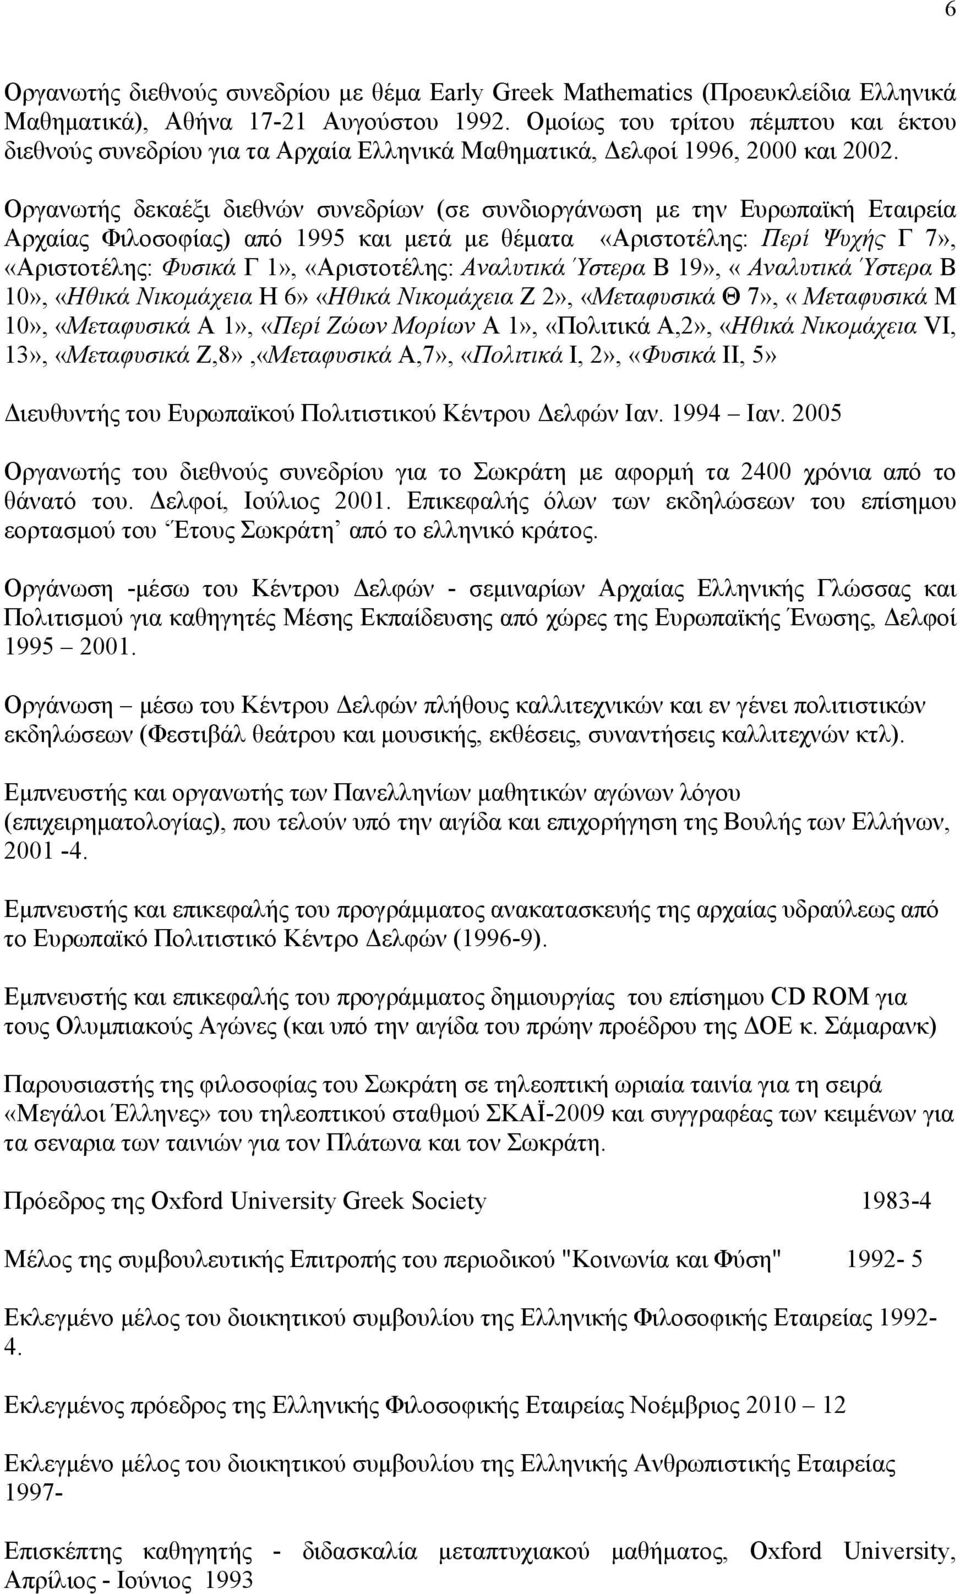 Οργανωτής δεκαέξι διεθνών συνεδρίων (σε συνδιοργάνωση με την Ευρωπαϊκή Εταιρεία Αρχαίας Φιλοσοφίας) από 1995 και μετά με θέματα «Αριστοτέλης: Περί Ψυχής Γ 7», «Αριστοτέλης: Φυσικά Γ 1», «Αριστοτέλης: